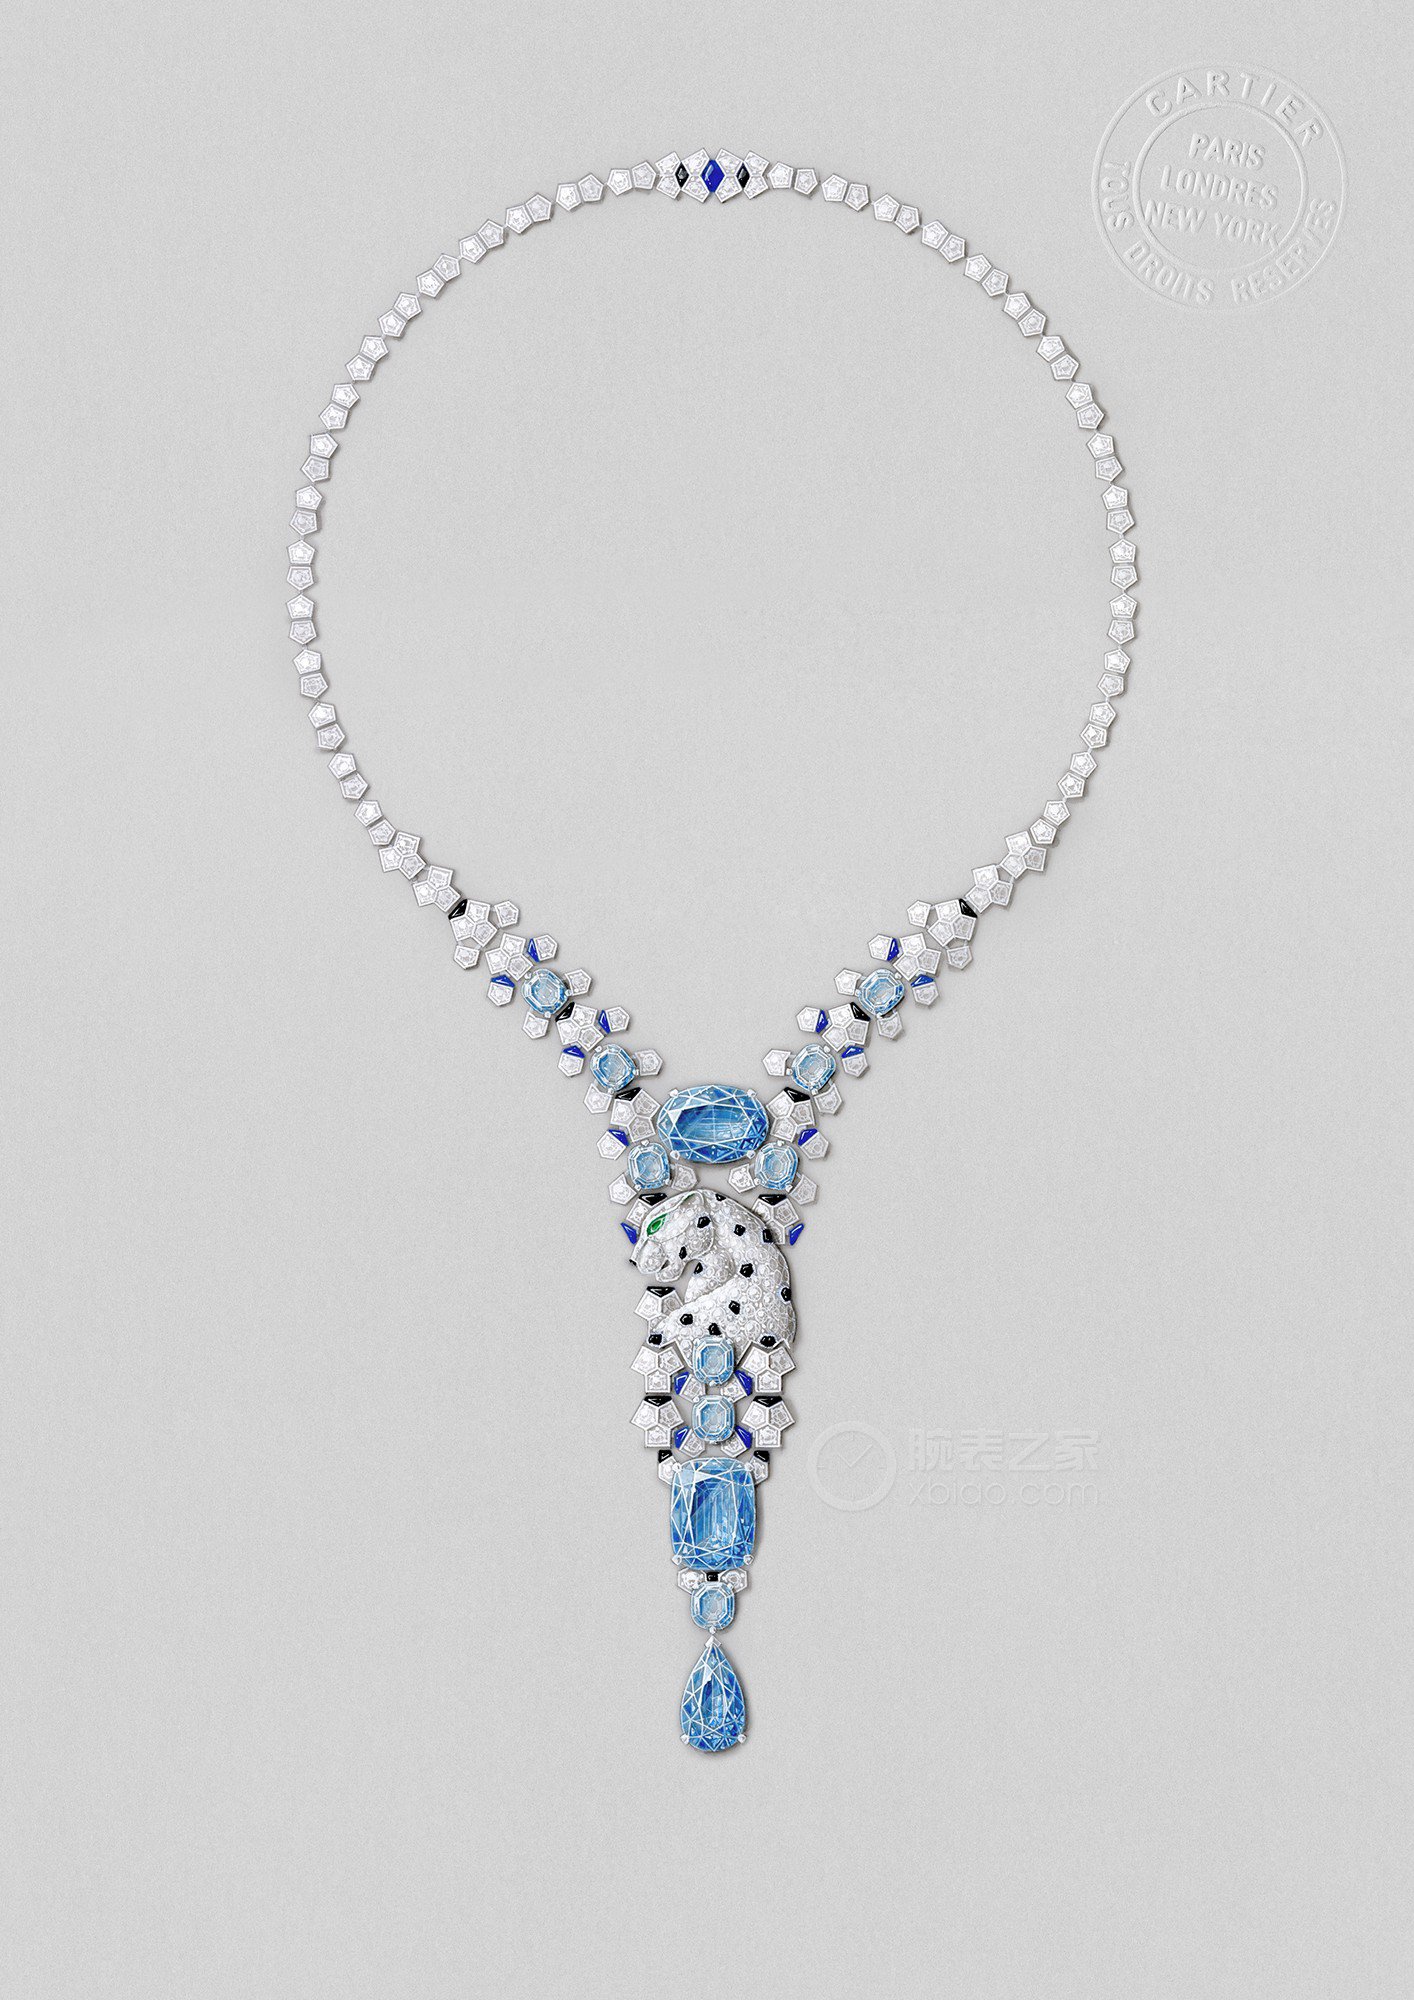 卡地亚LE VOYAGE RECOMMENCÉ高级珠宝系列PANTHERE GIVRÉE高级珠宝项链项链